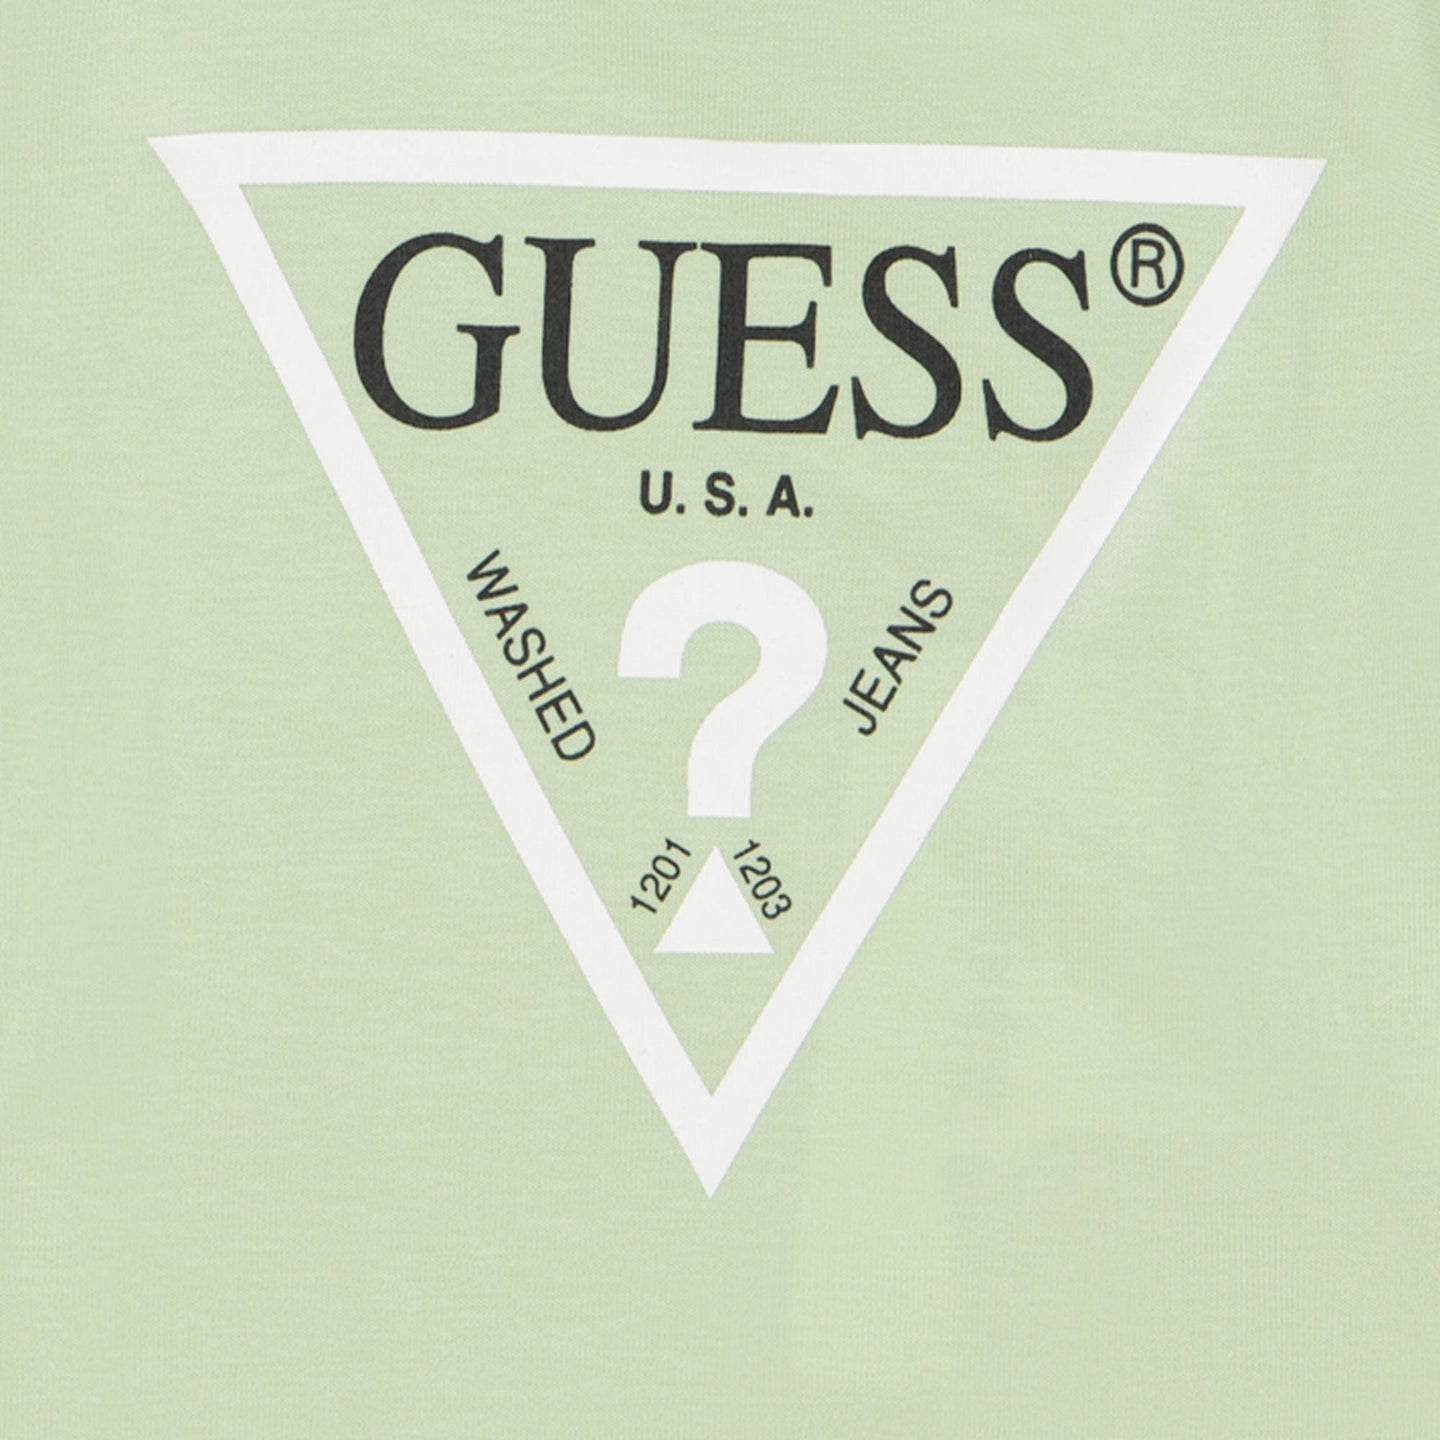 Guess Baby Jongens T-Shirt Licht Groen 12 mnd